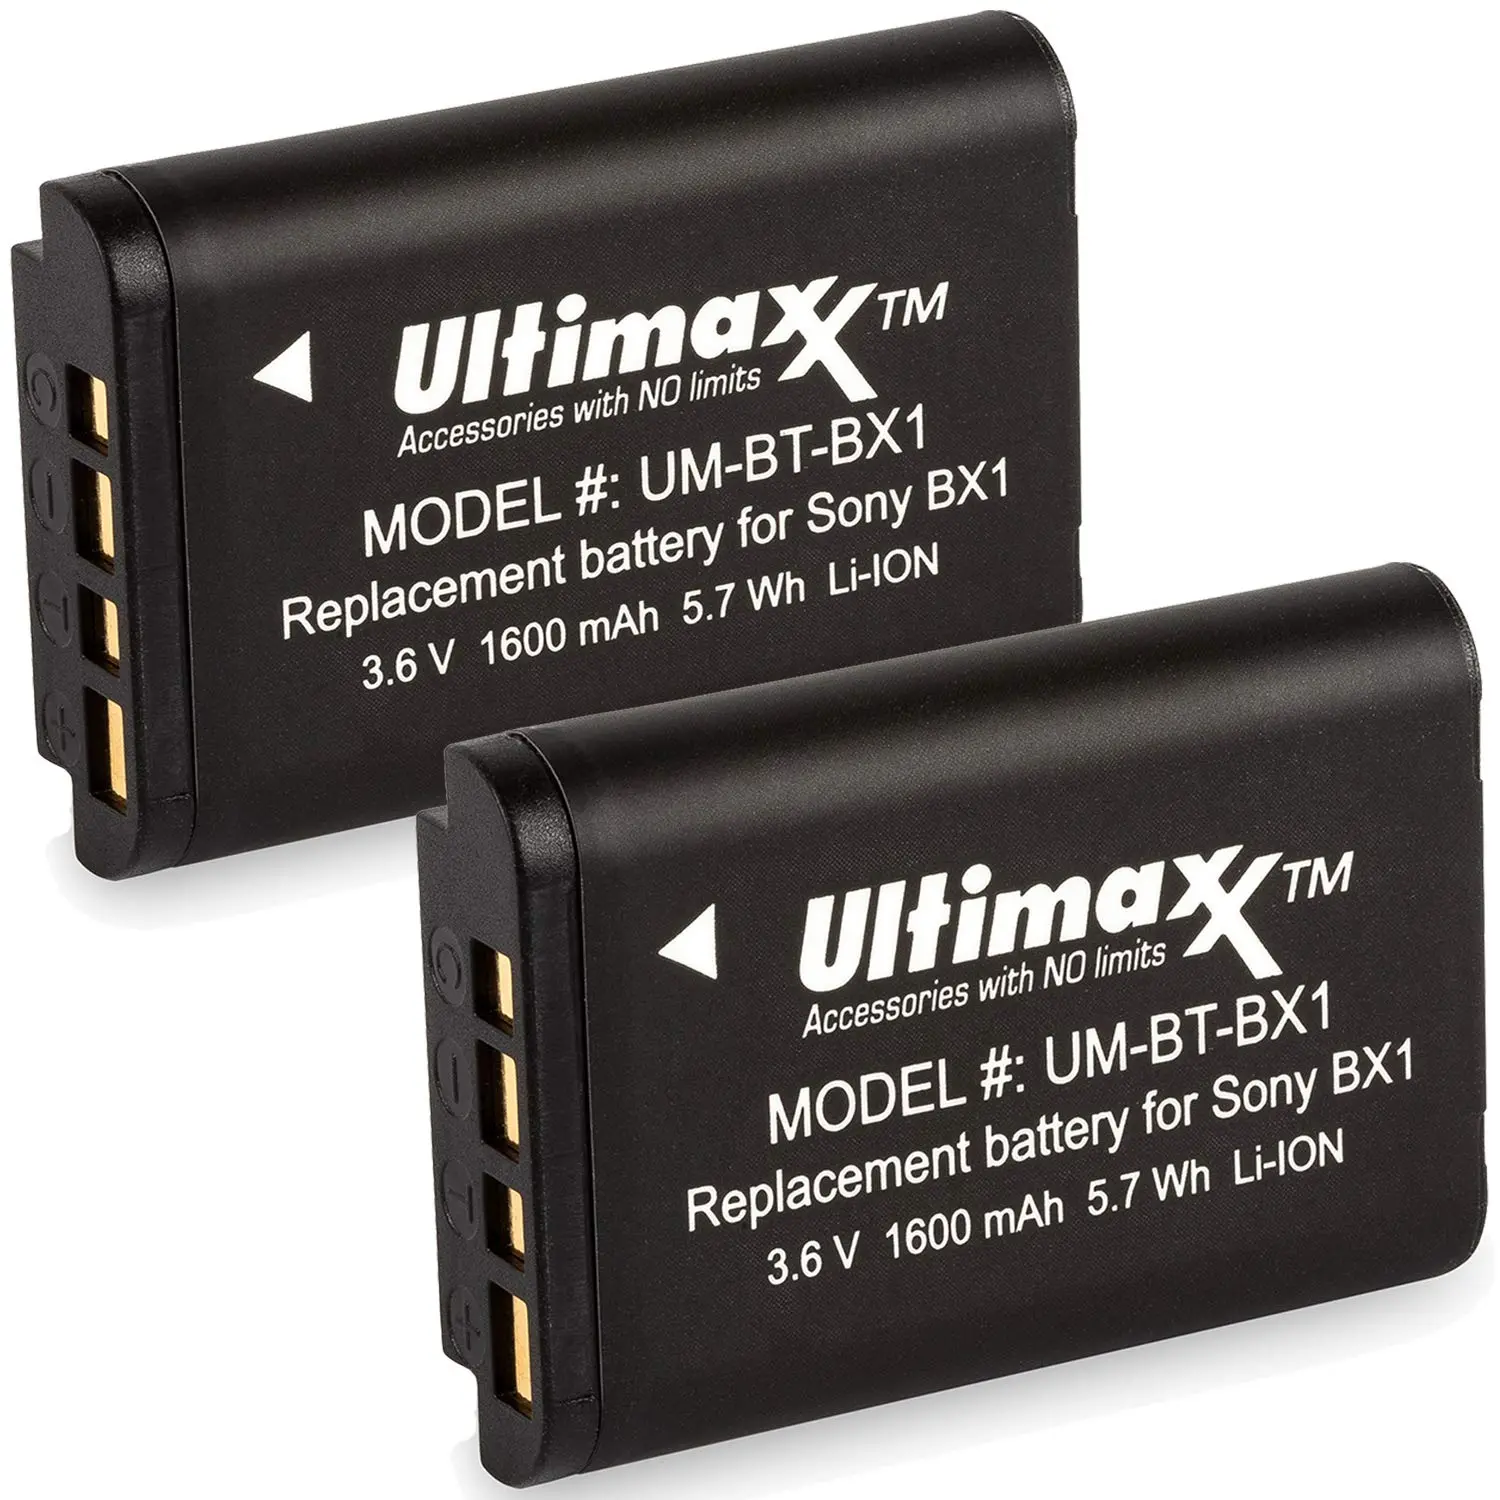 baterias para celular de larga duracion - Qué celular le dura mucho la batería